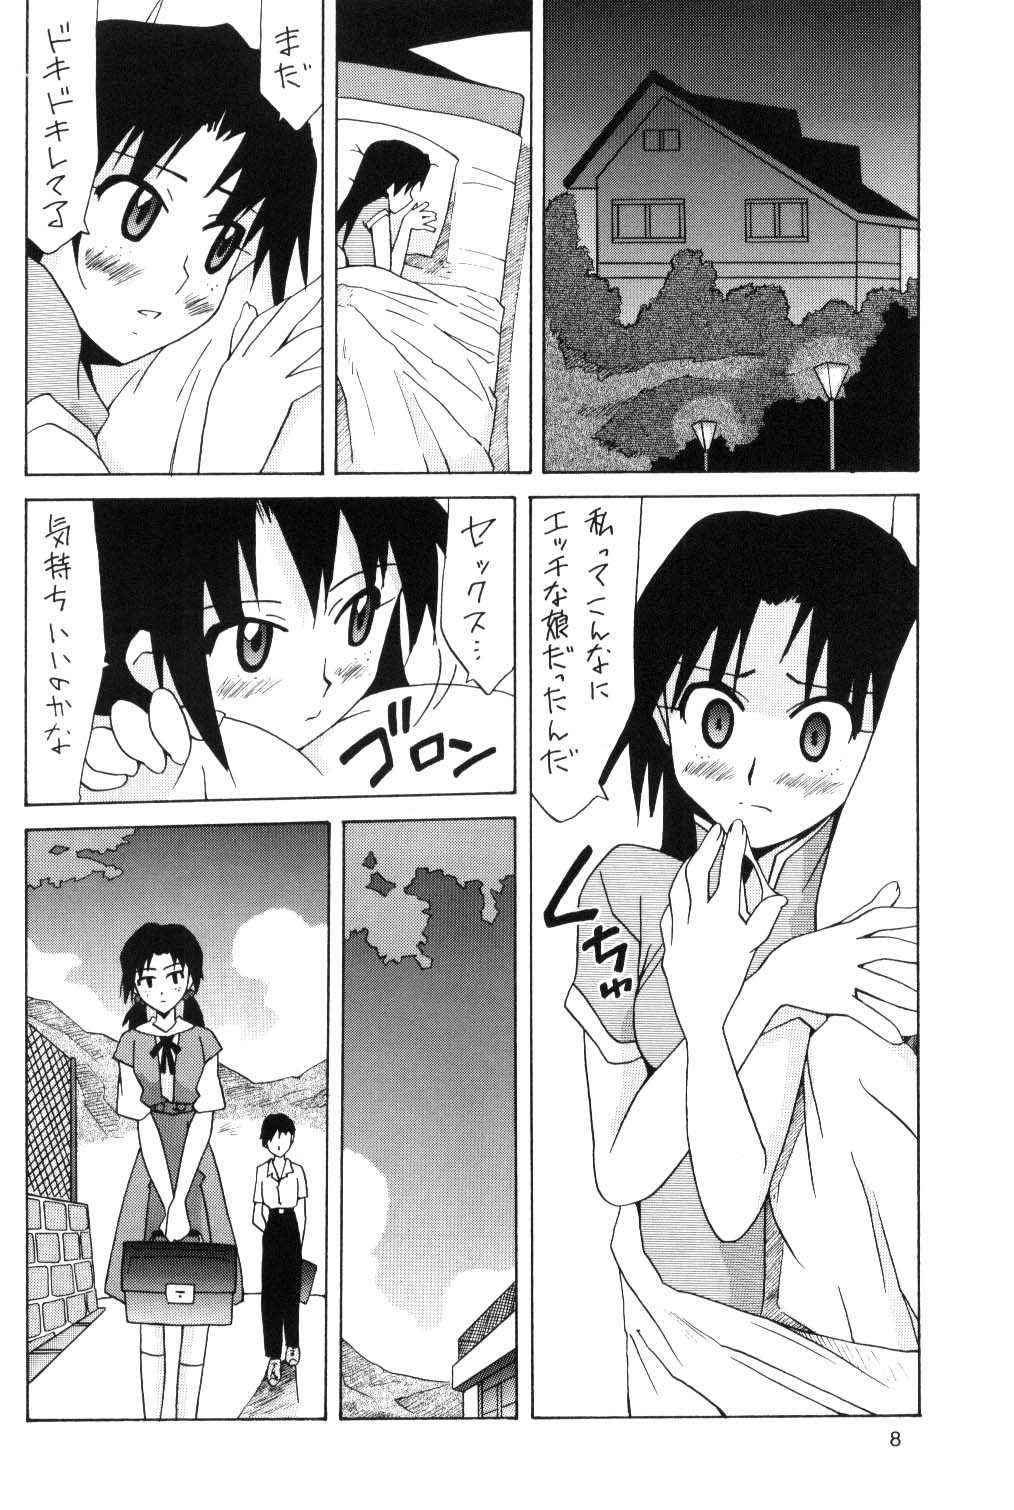 Hikari and Asuka [UTAMARU PRESS] 